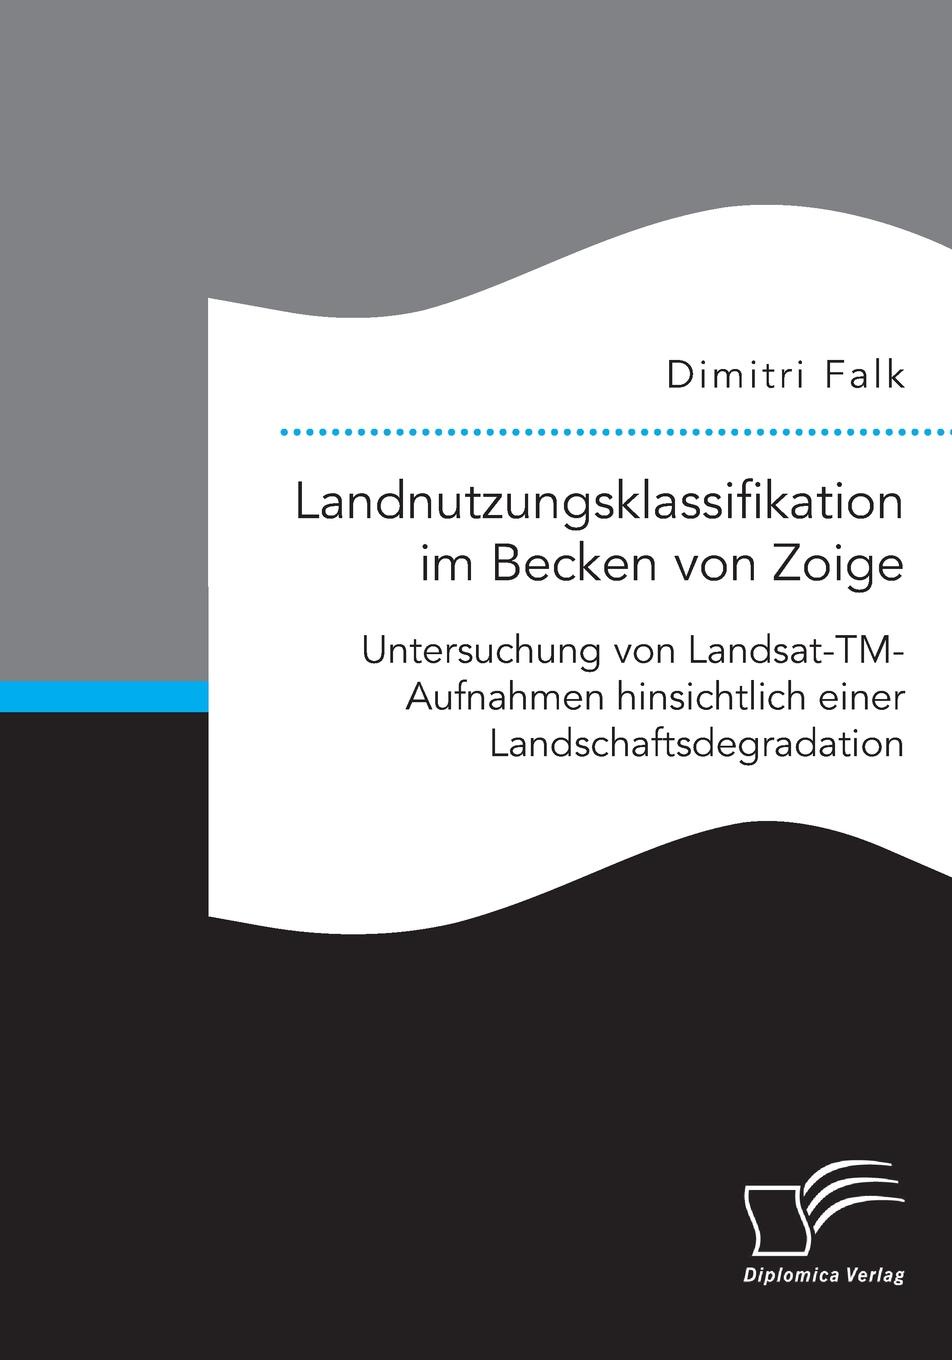 Landnutzungsklassifikation im Becken von Zoige. Untersuchung von Landsat-TM-Aufnahmen hinsichtlich einer Landschaftsdegradation